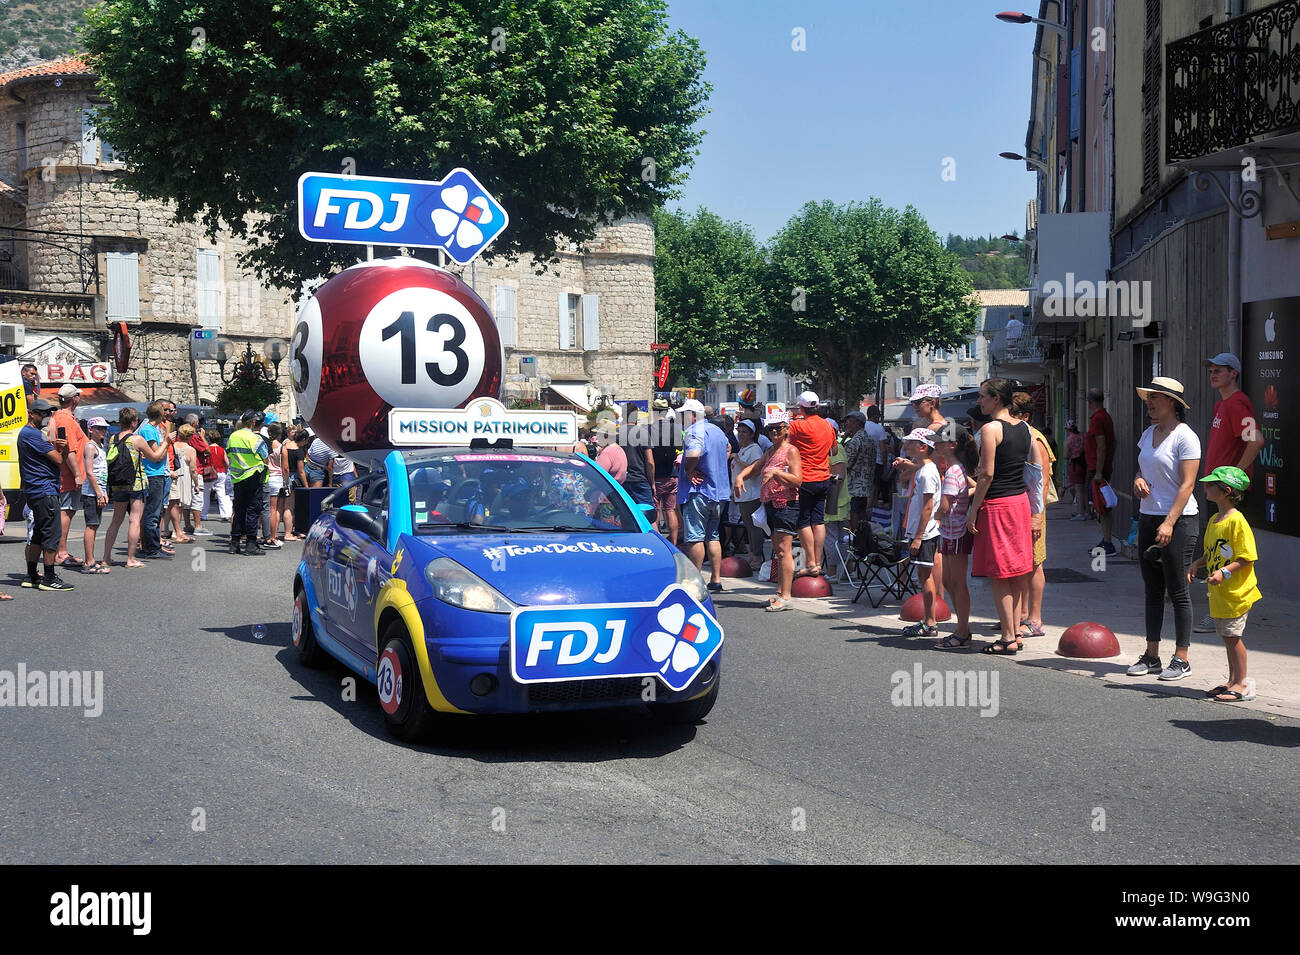 Passage d'un véhicule publicitaire de la FDJ dans la caravane va du Tour de France à Anduze Banque D'Images